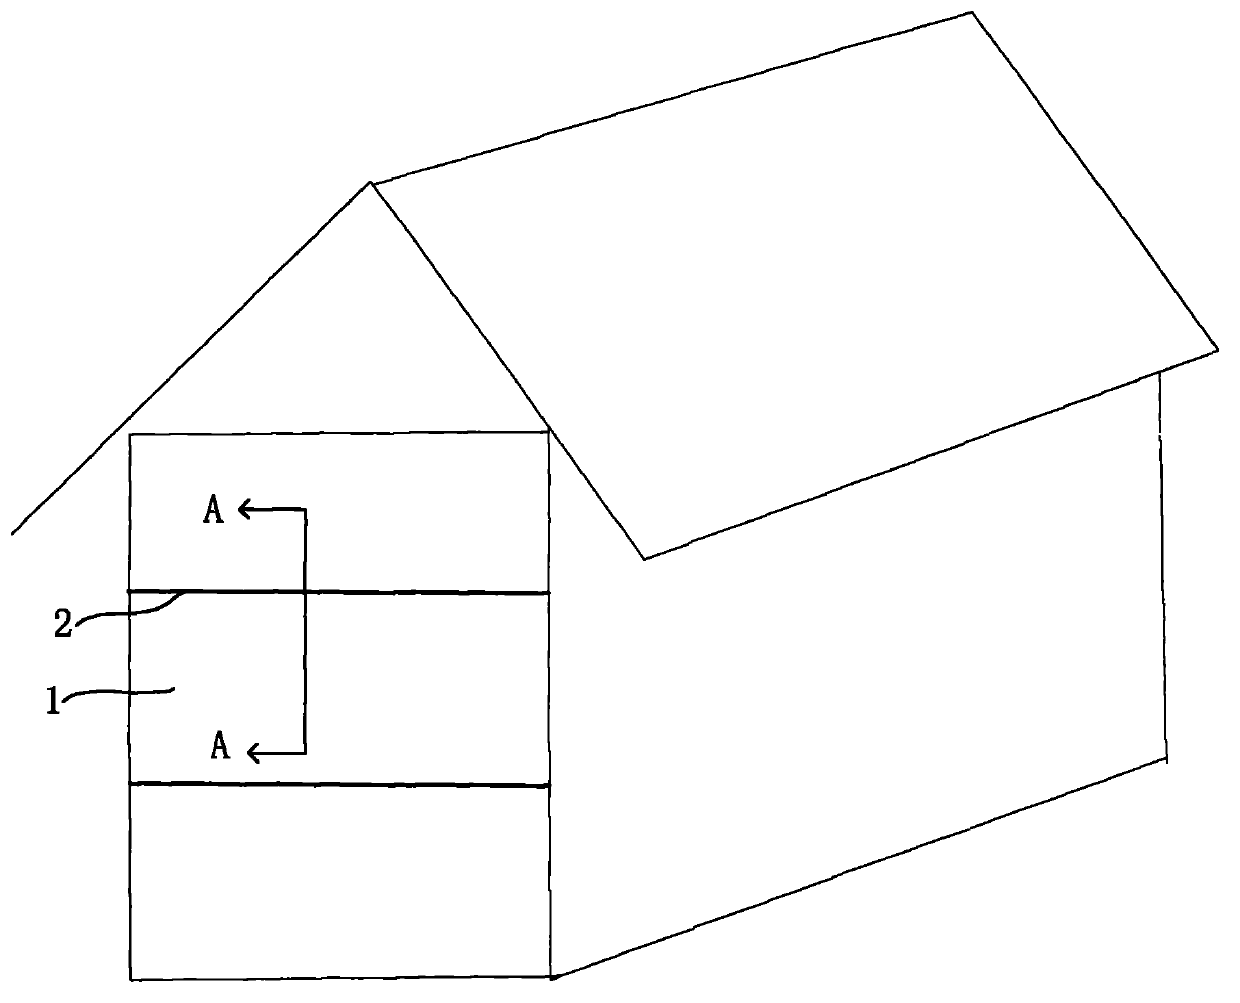 Modularized house